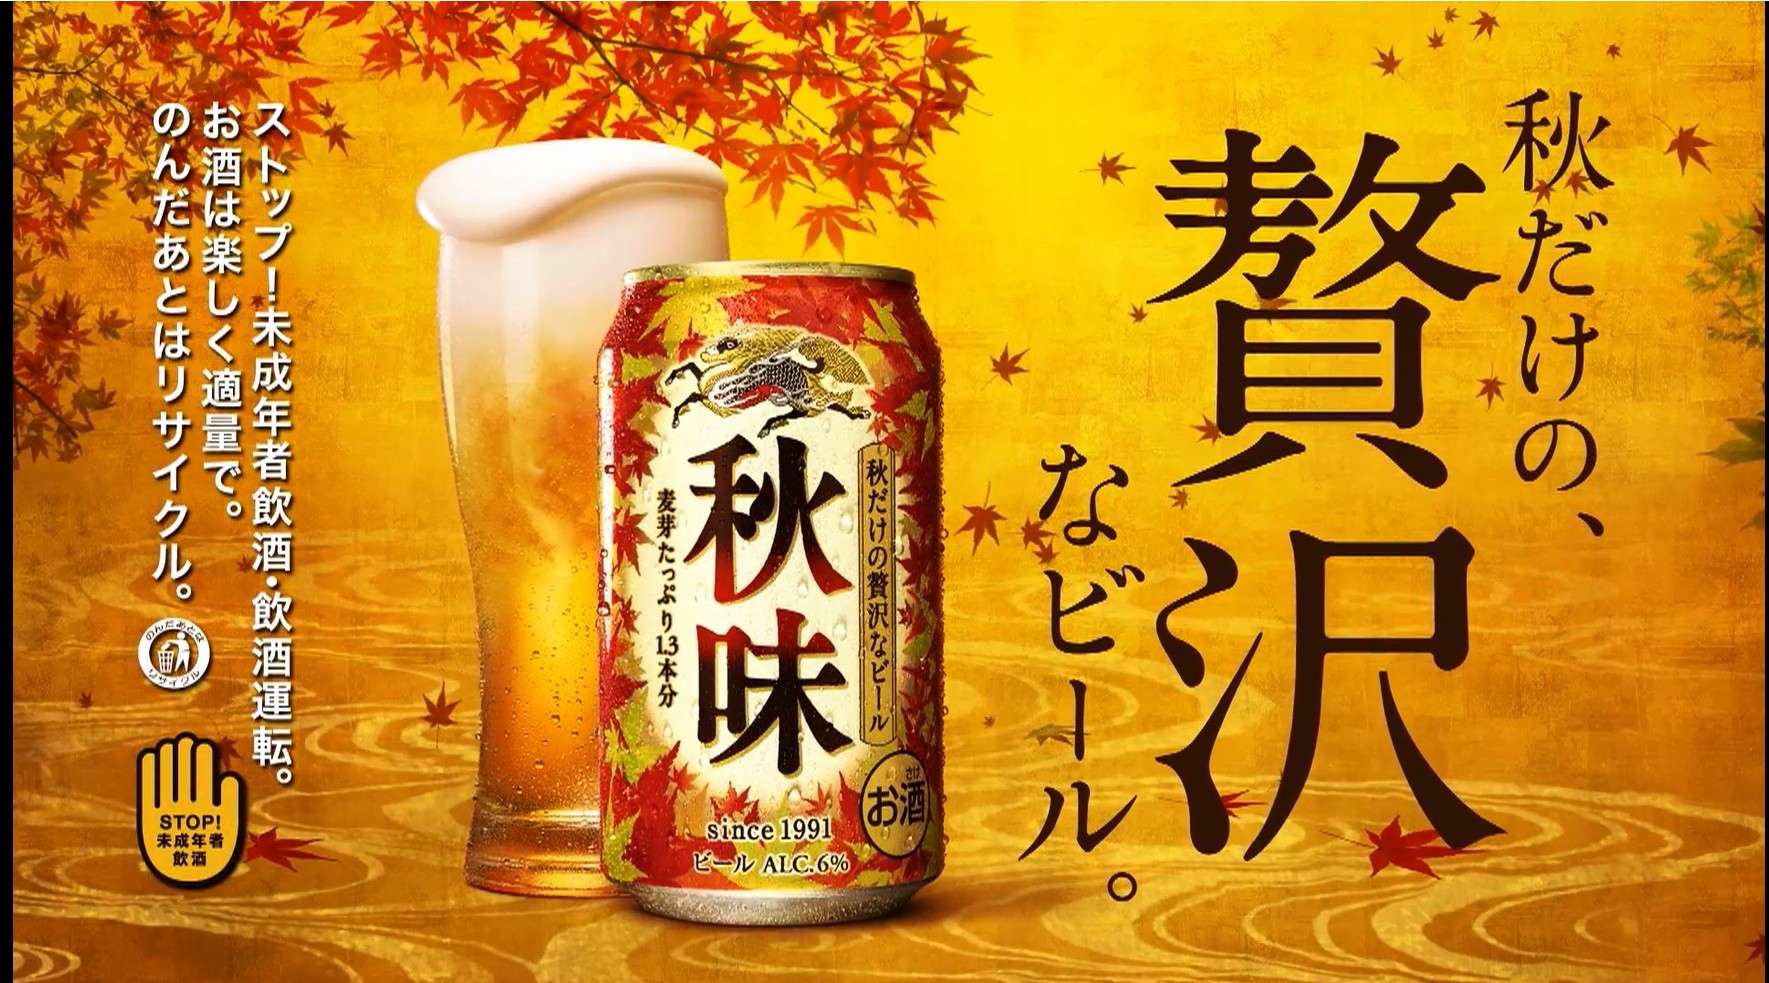 荒船 泰广- 麒麟啤酒 “秋味” 宣传片